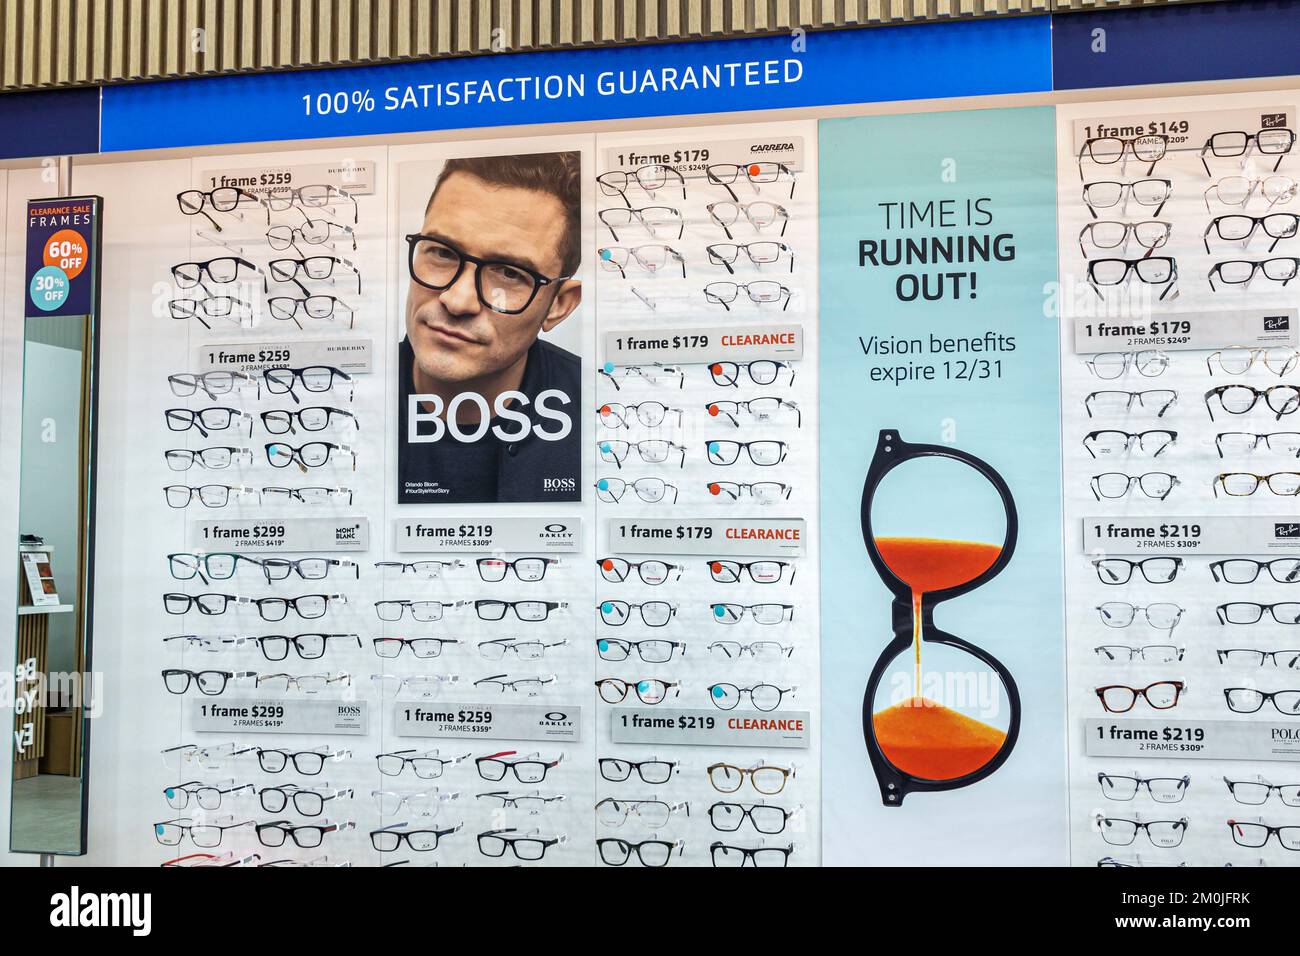 Miami Florida,Biscayne optique optométriste opticien lunettes,intérieur,magasins d'affaires magasins commerçants marché marchand m Banque D'Images